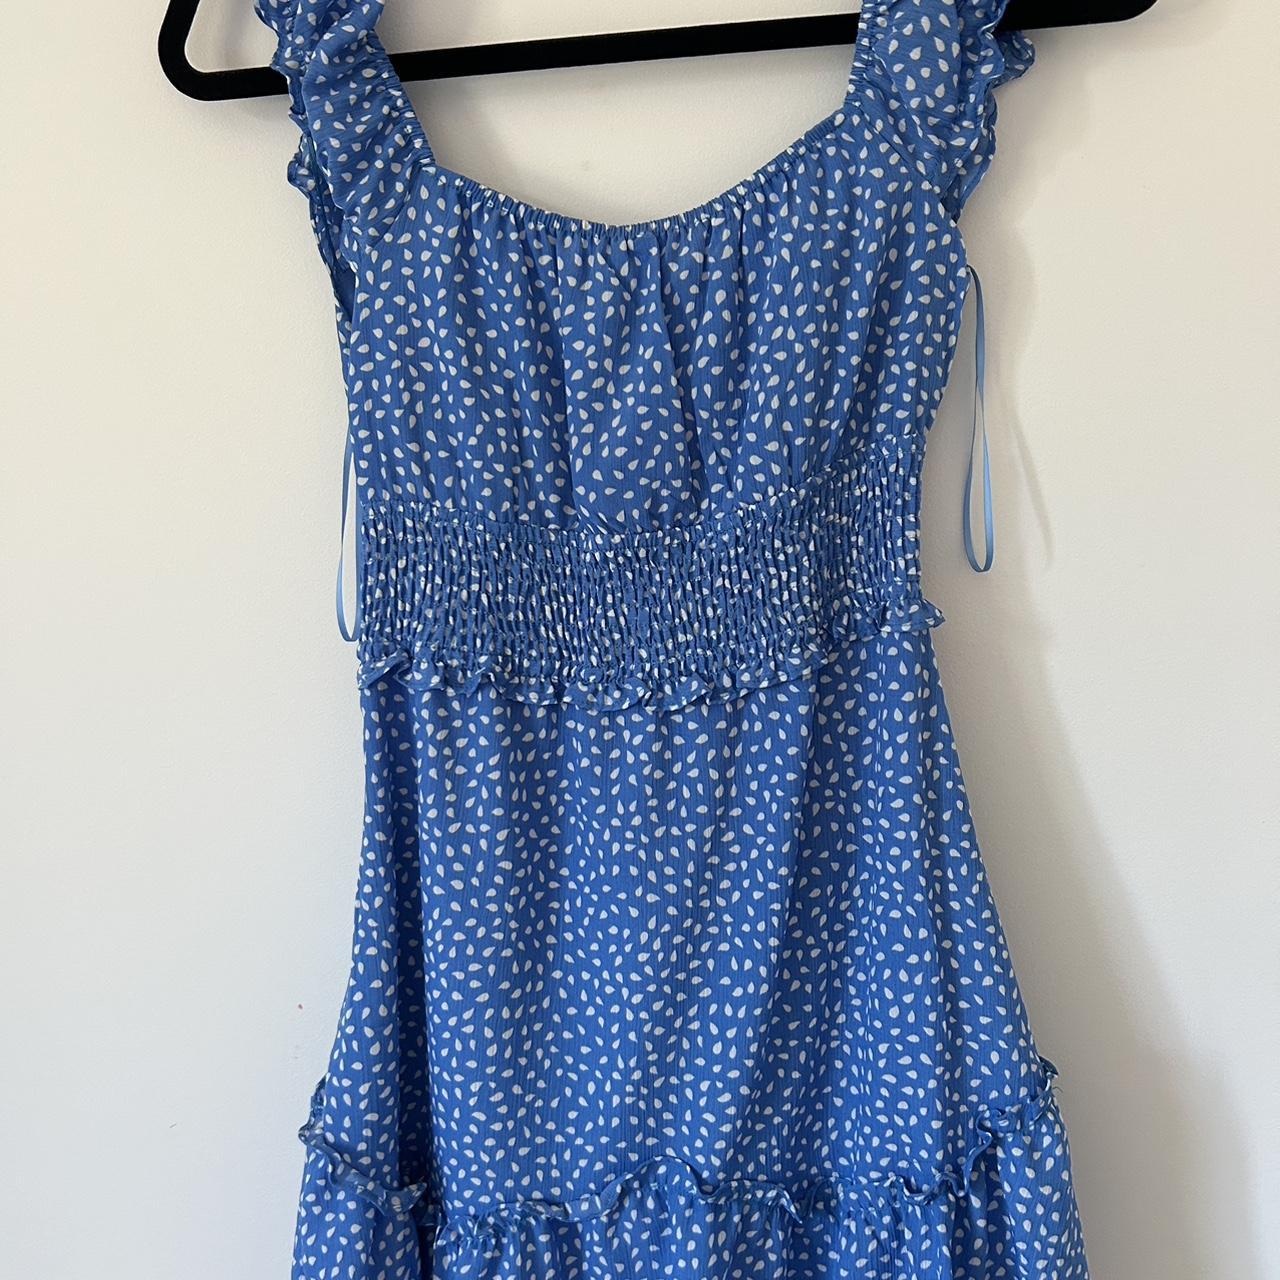 stellino tear drop blue dress - size 8 - originally $80 - Depop